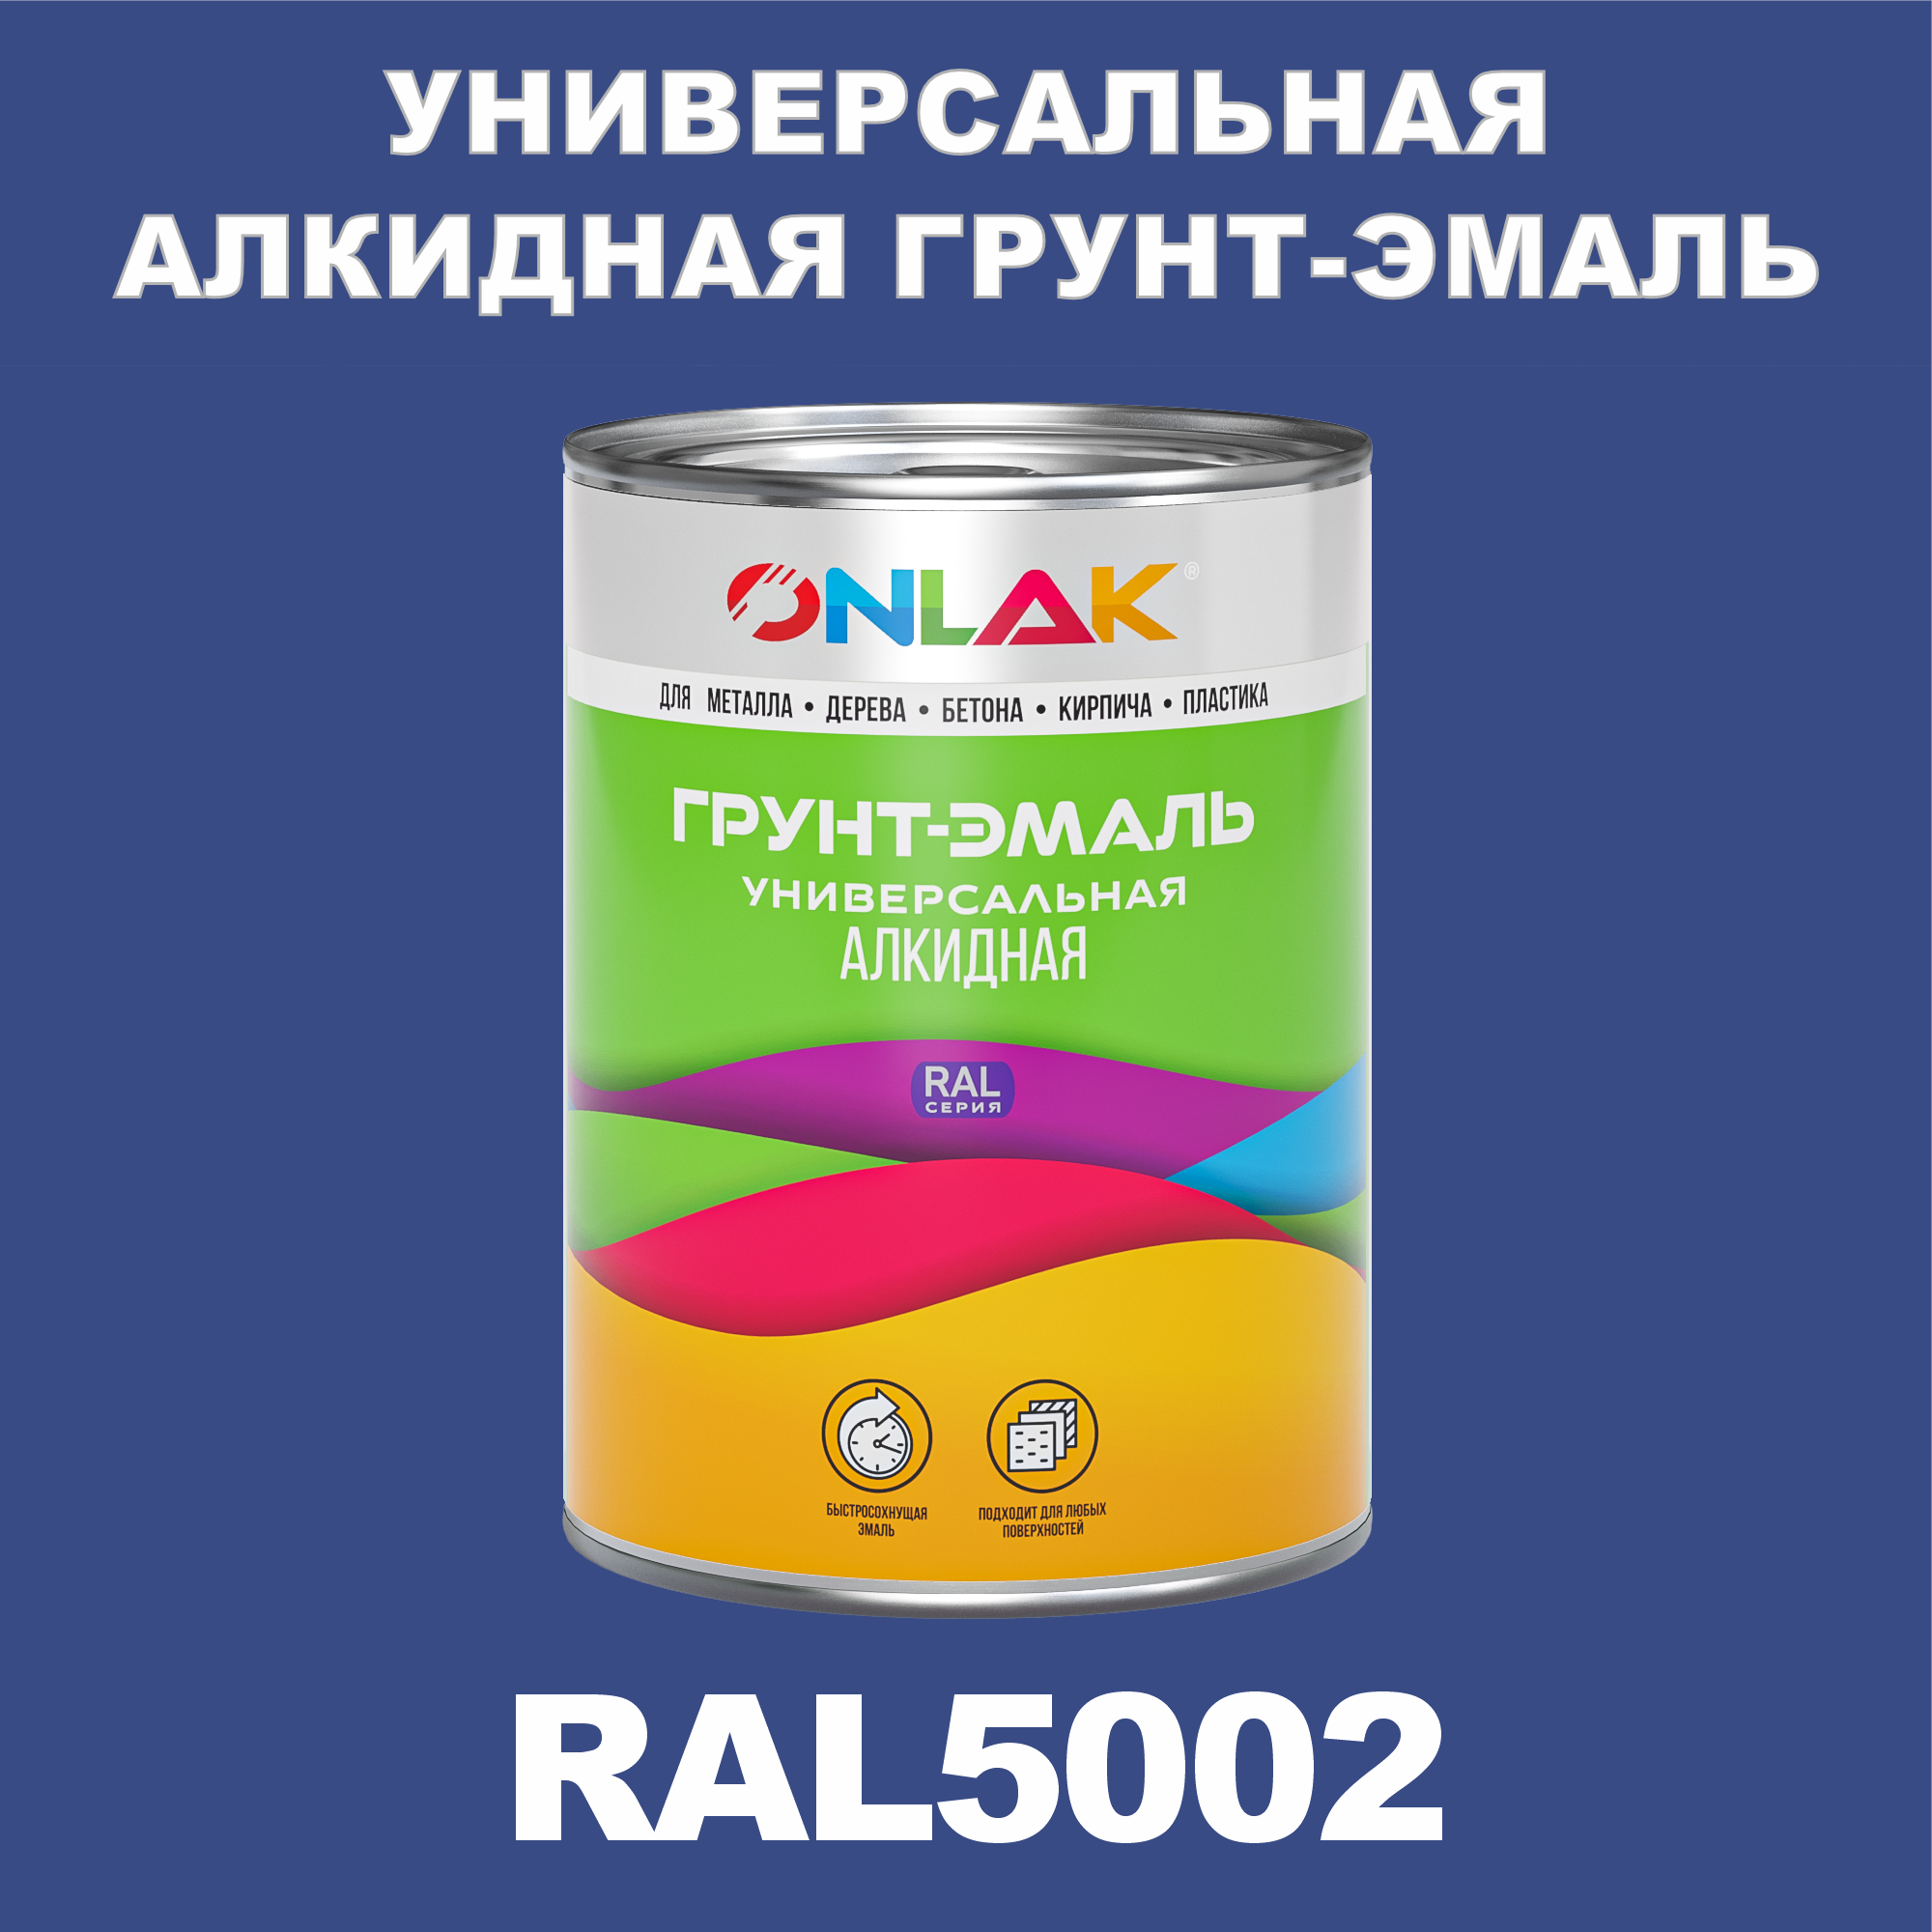 Грунт-эмаль ONLAK 1К RAL5002 антикоррозионная алкидная по металлу по ржавчине 1 кг грунт эмаль престиж по ржавчине алкидная серая 10 кг